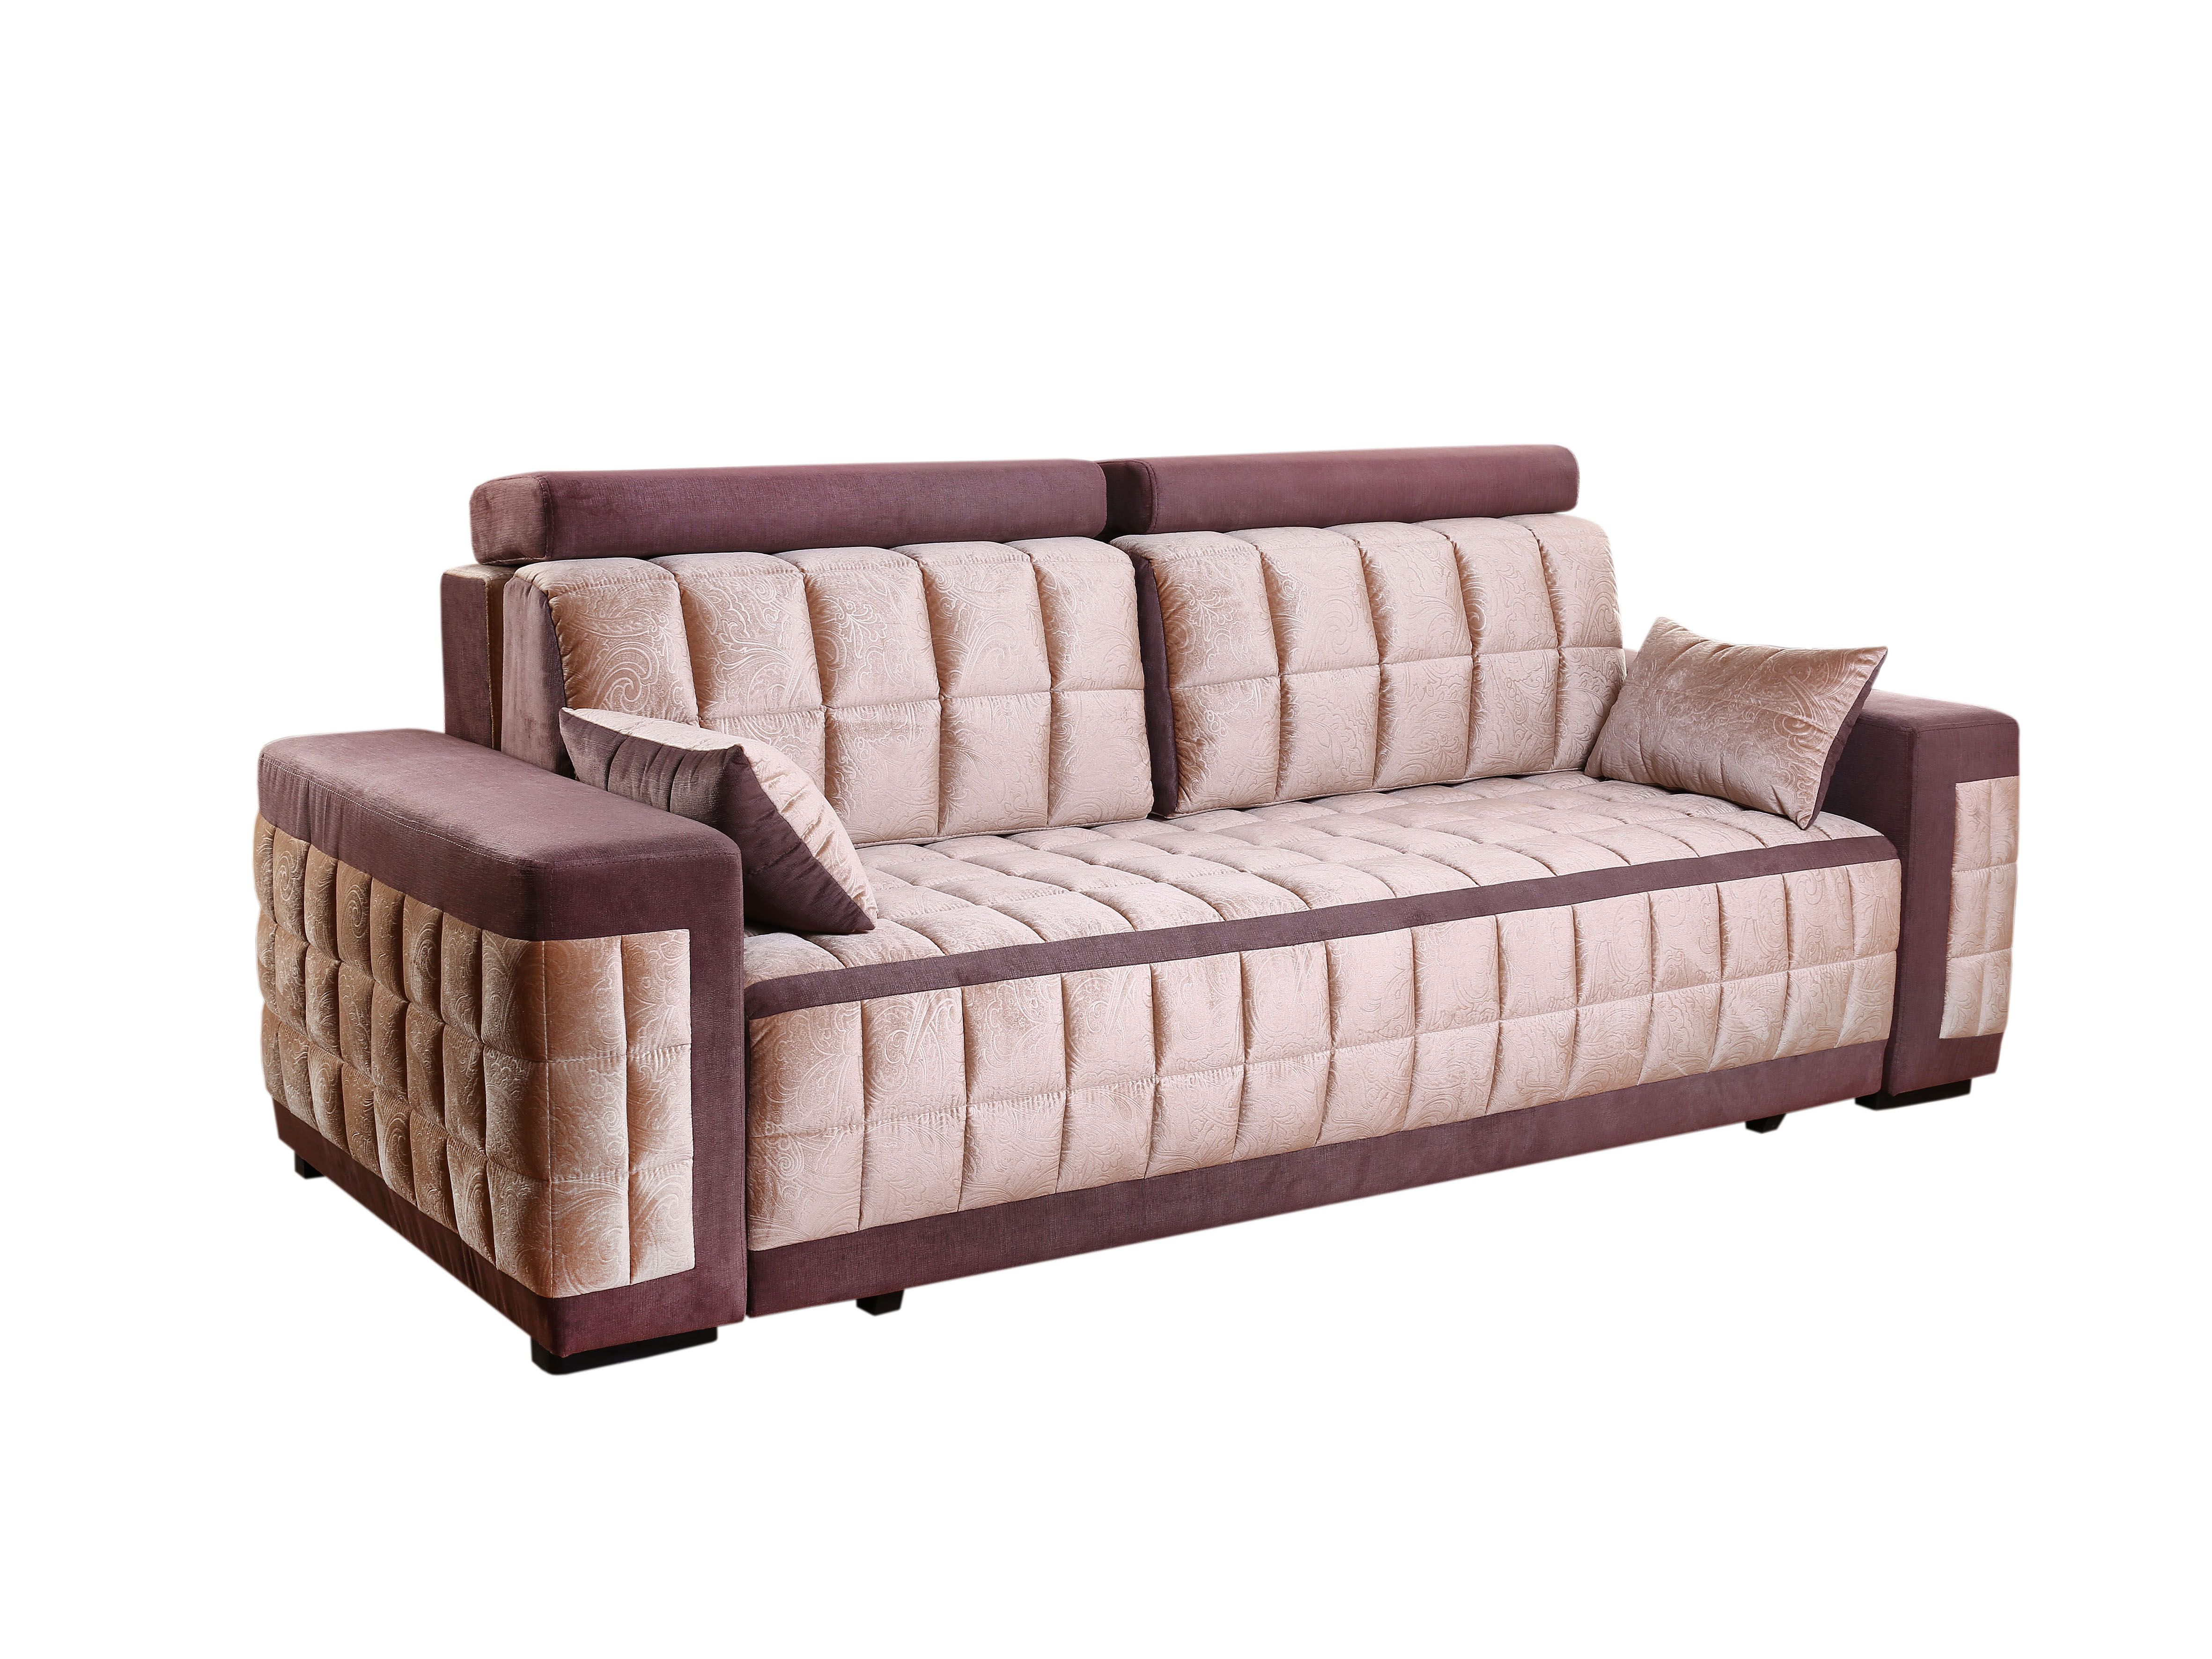 Царь мебель диван линда